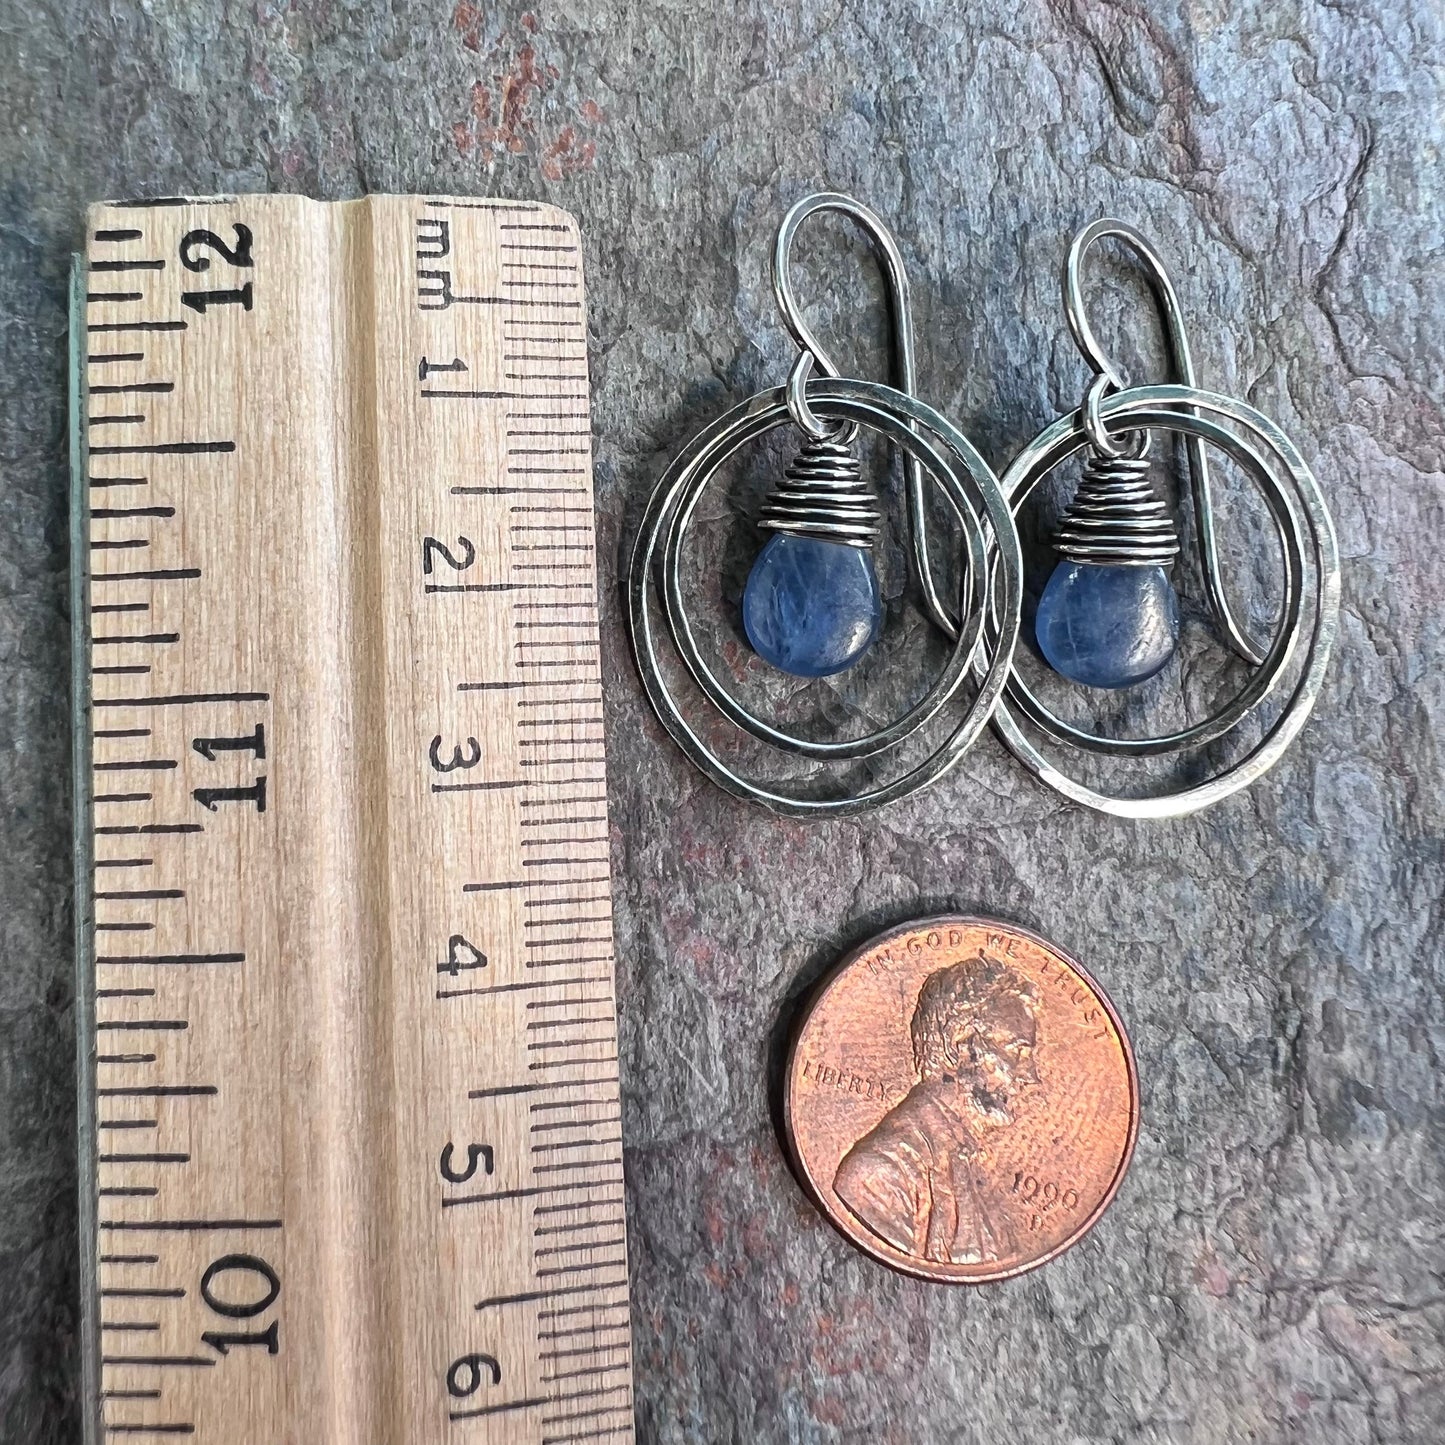 Kyanite Sterling Silver Earrings - Kyanite Teardrops in Hammed Sterling Silver Oval Earrings